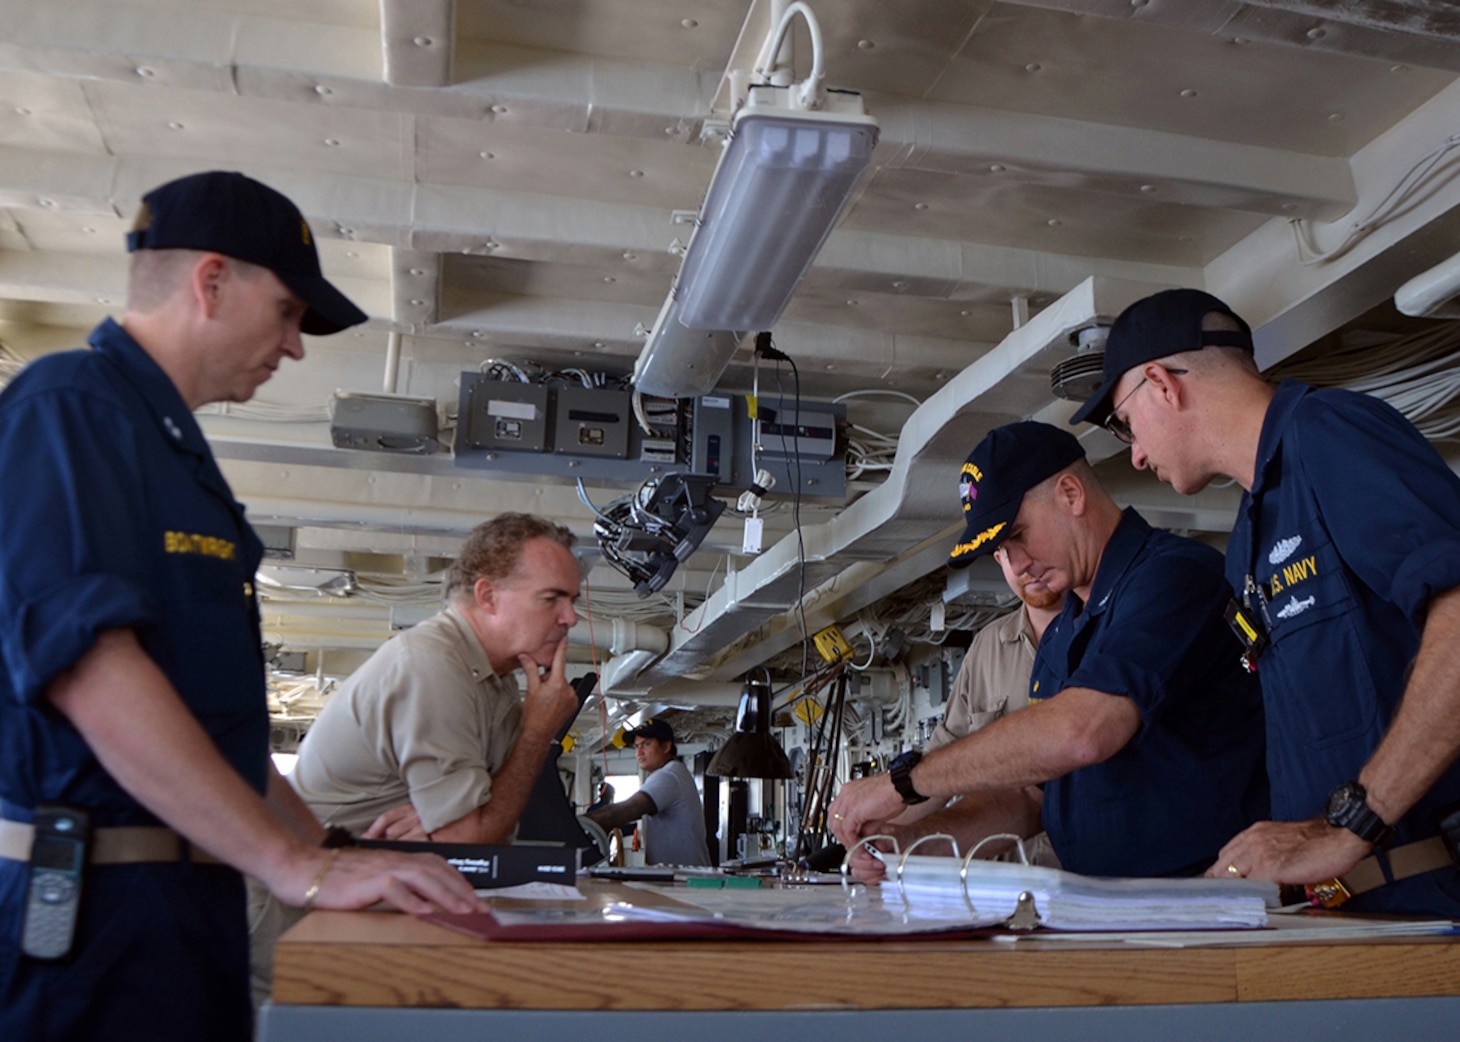 DVIDS - News - USS Frank Cable Departs Saipan After Sailors and